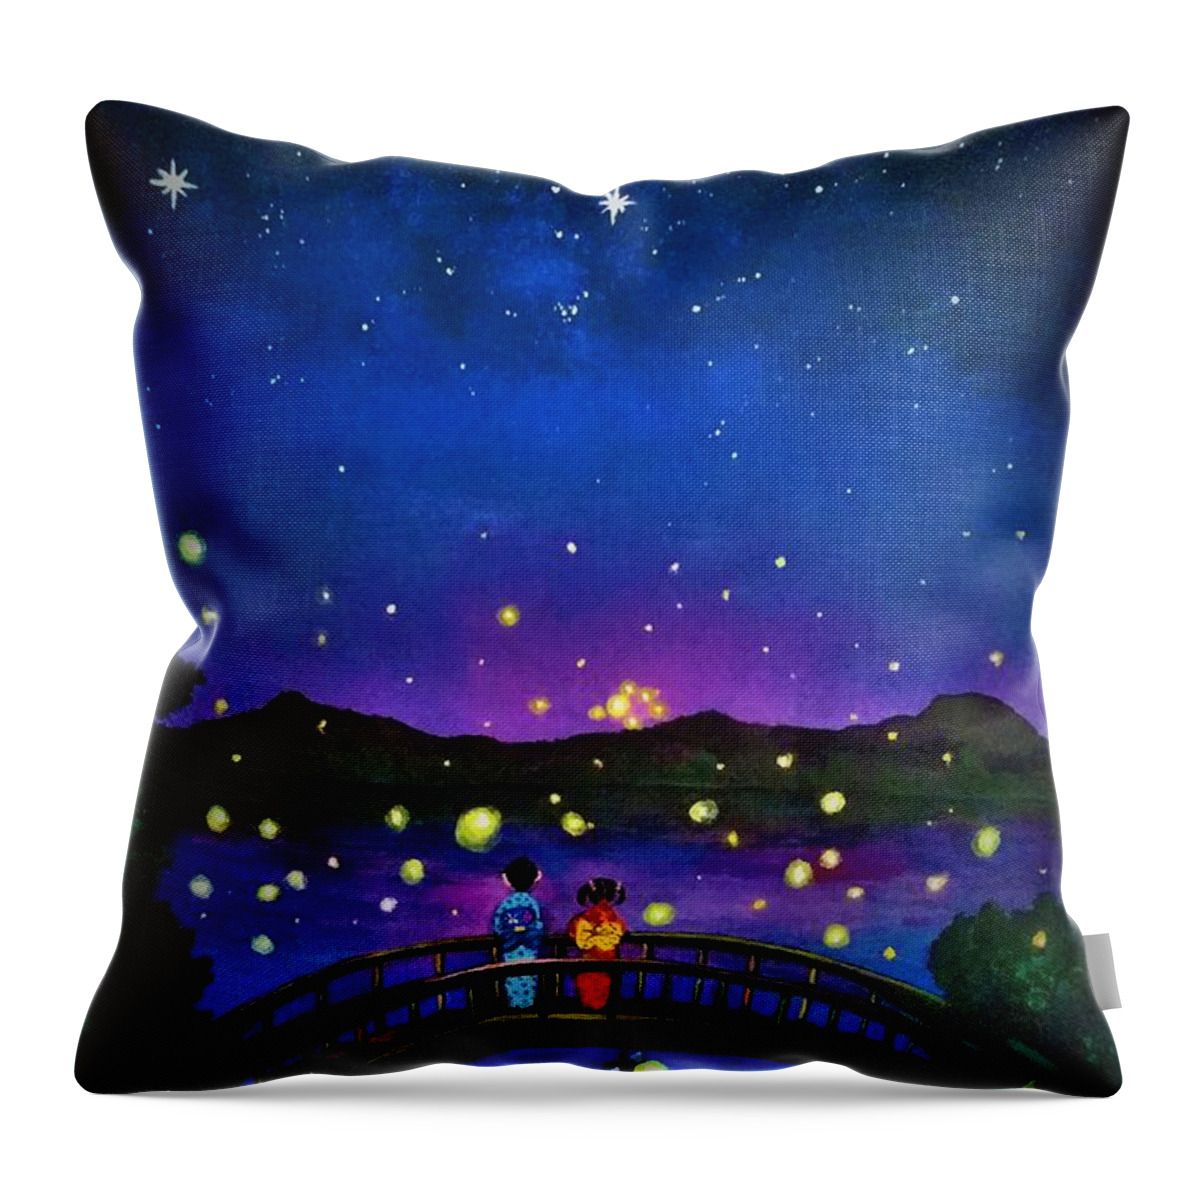 Summer Throw Pillow featuring the painting Summer fireflies night lights by Tara Krishna